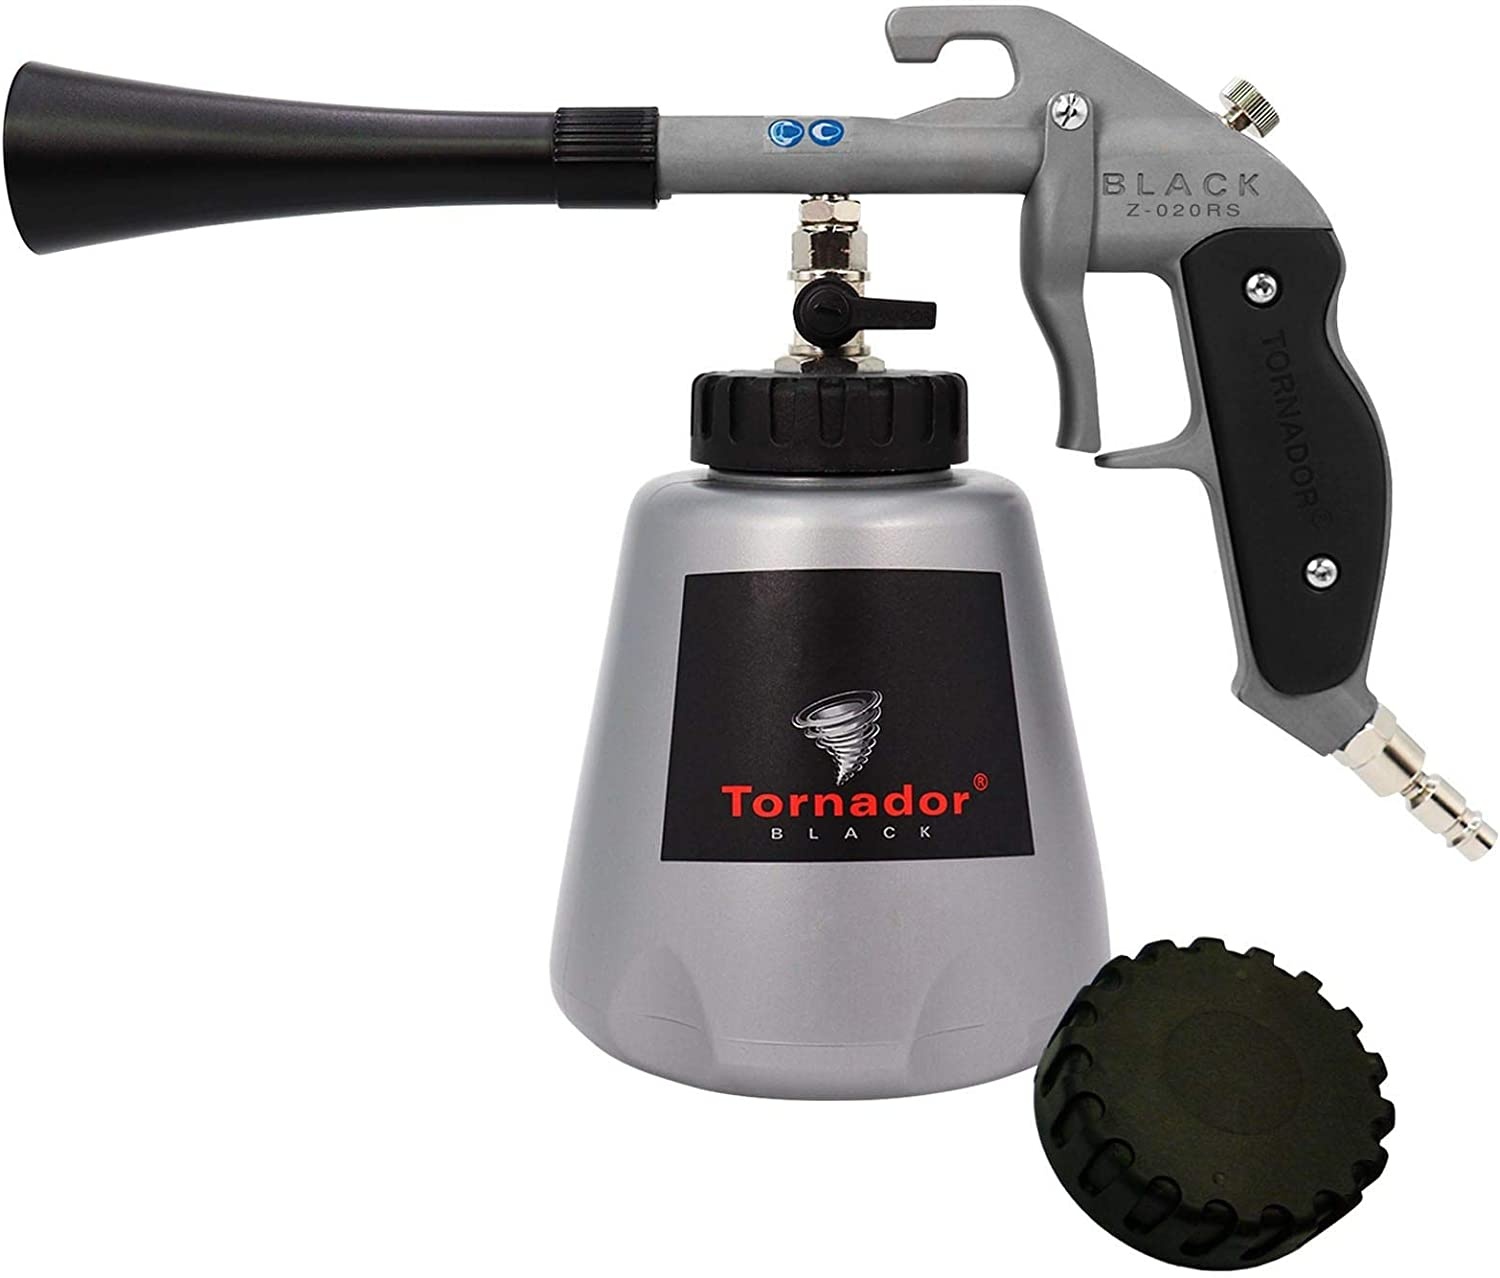 Bild von Tornador Black Z-020RS Druckluft-Reinigungspistole 5.5 bar bürstenlos, inkl. Multifunktionswerkzeug